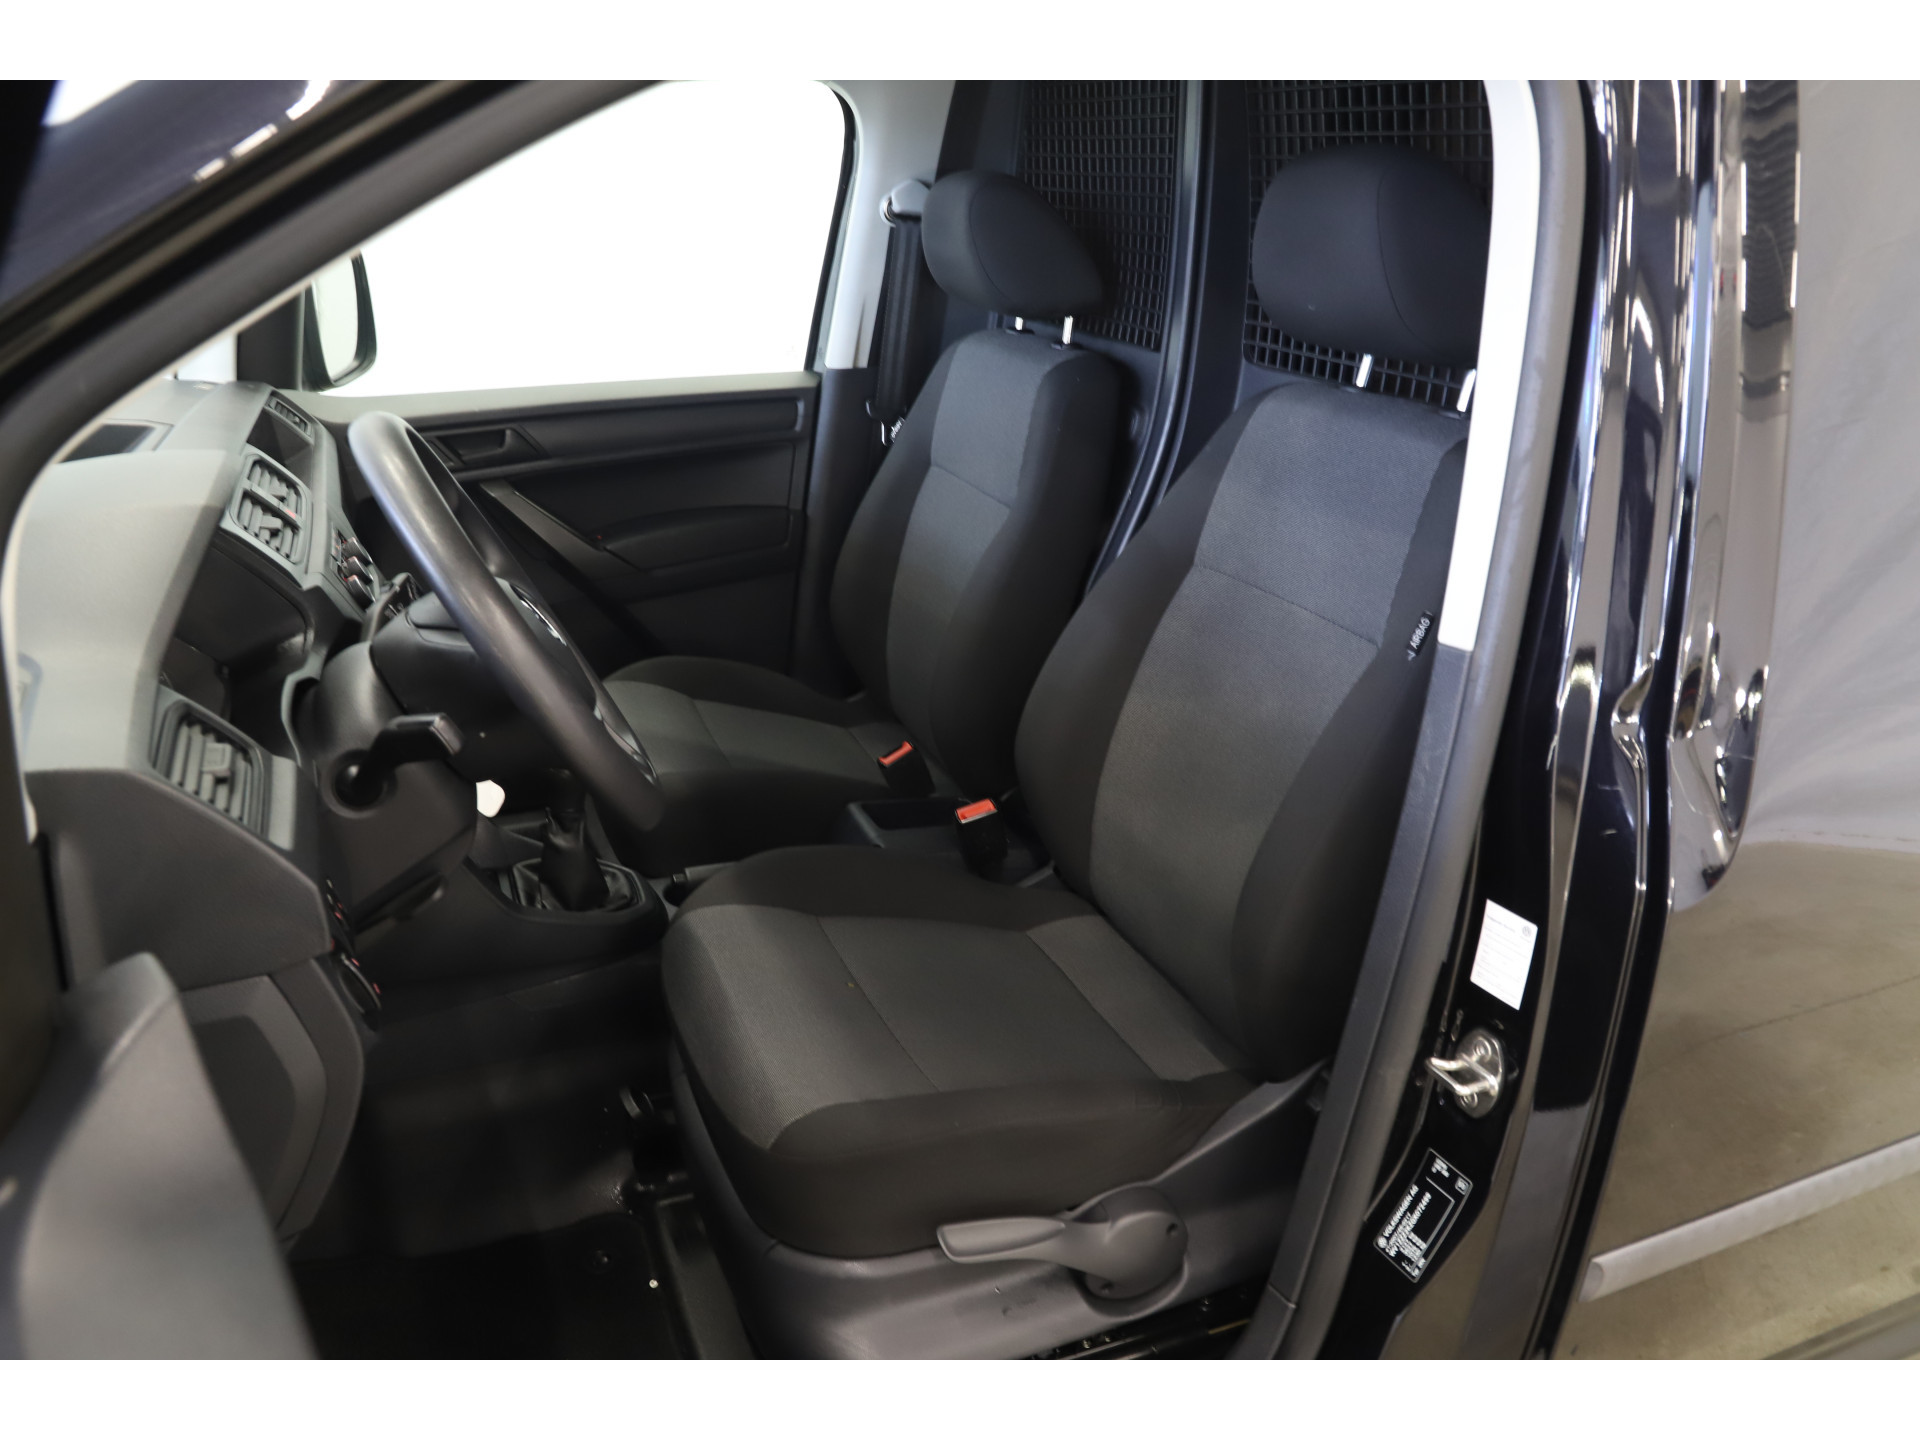 Volkswagen - Caddy 2.0 TDI L1H1 BMT Trendline - 2016